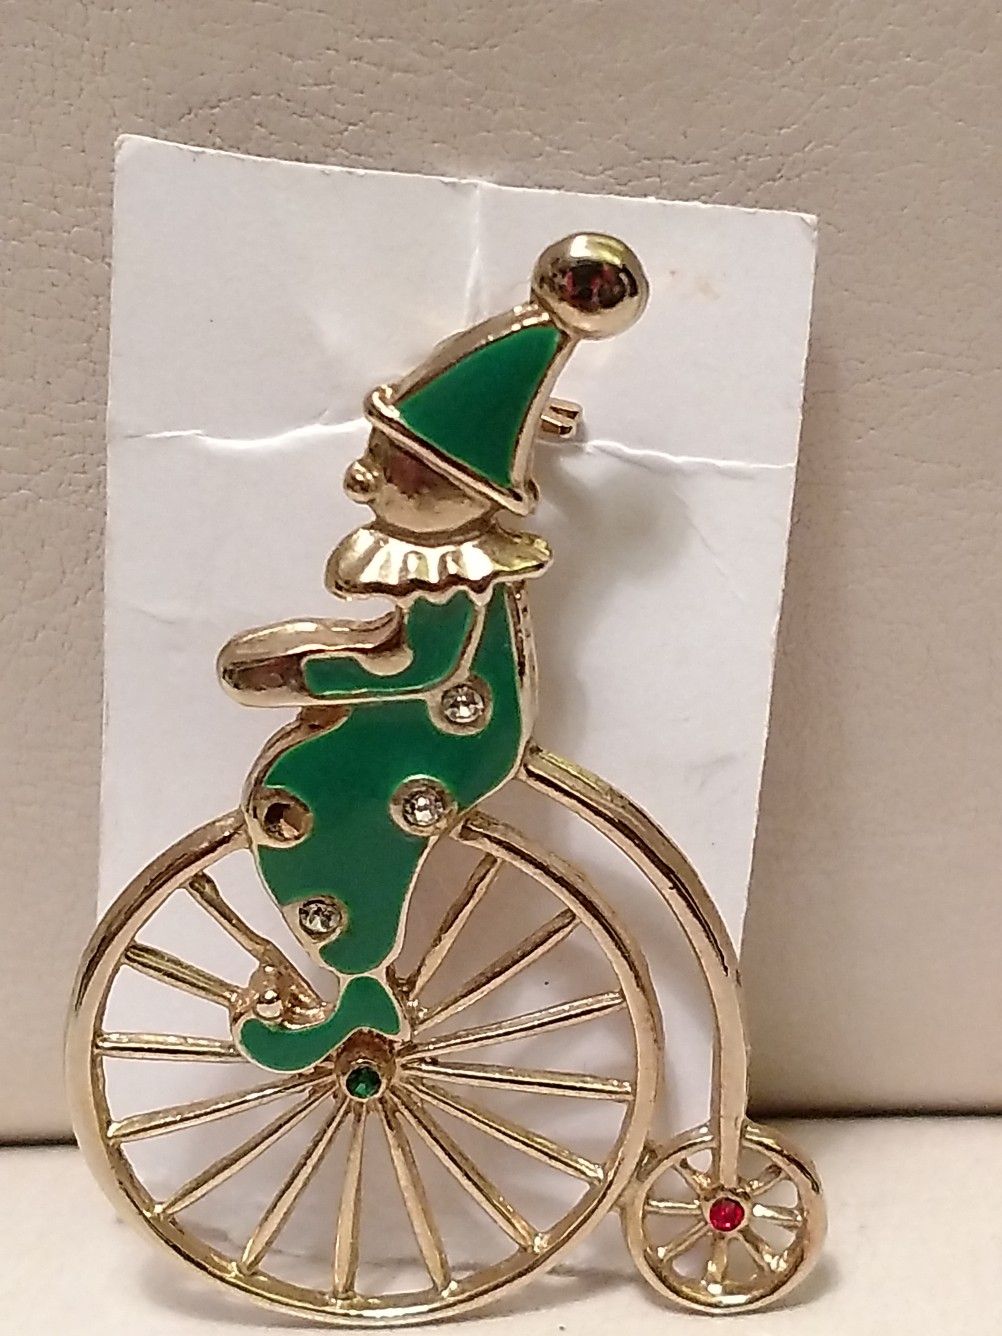 Vintage Enamel Metal Pin Brooch Clown On Bicycle